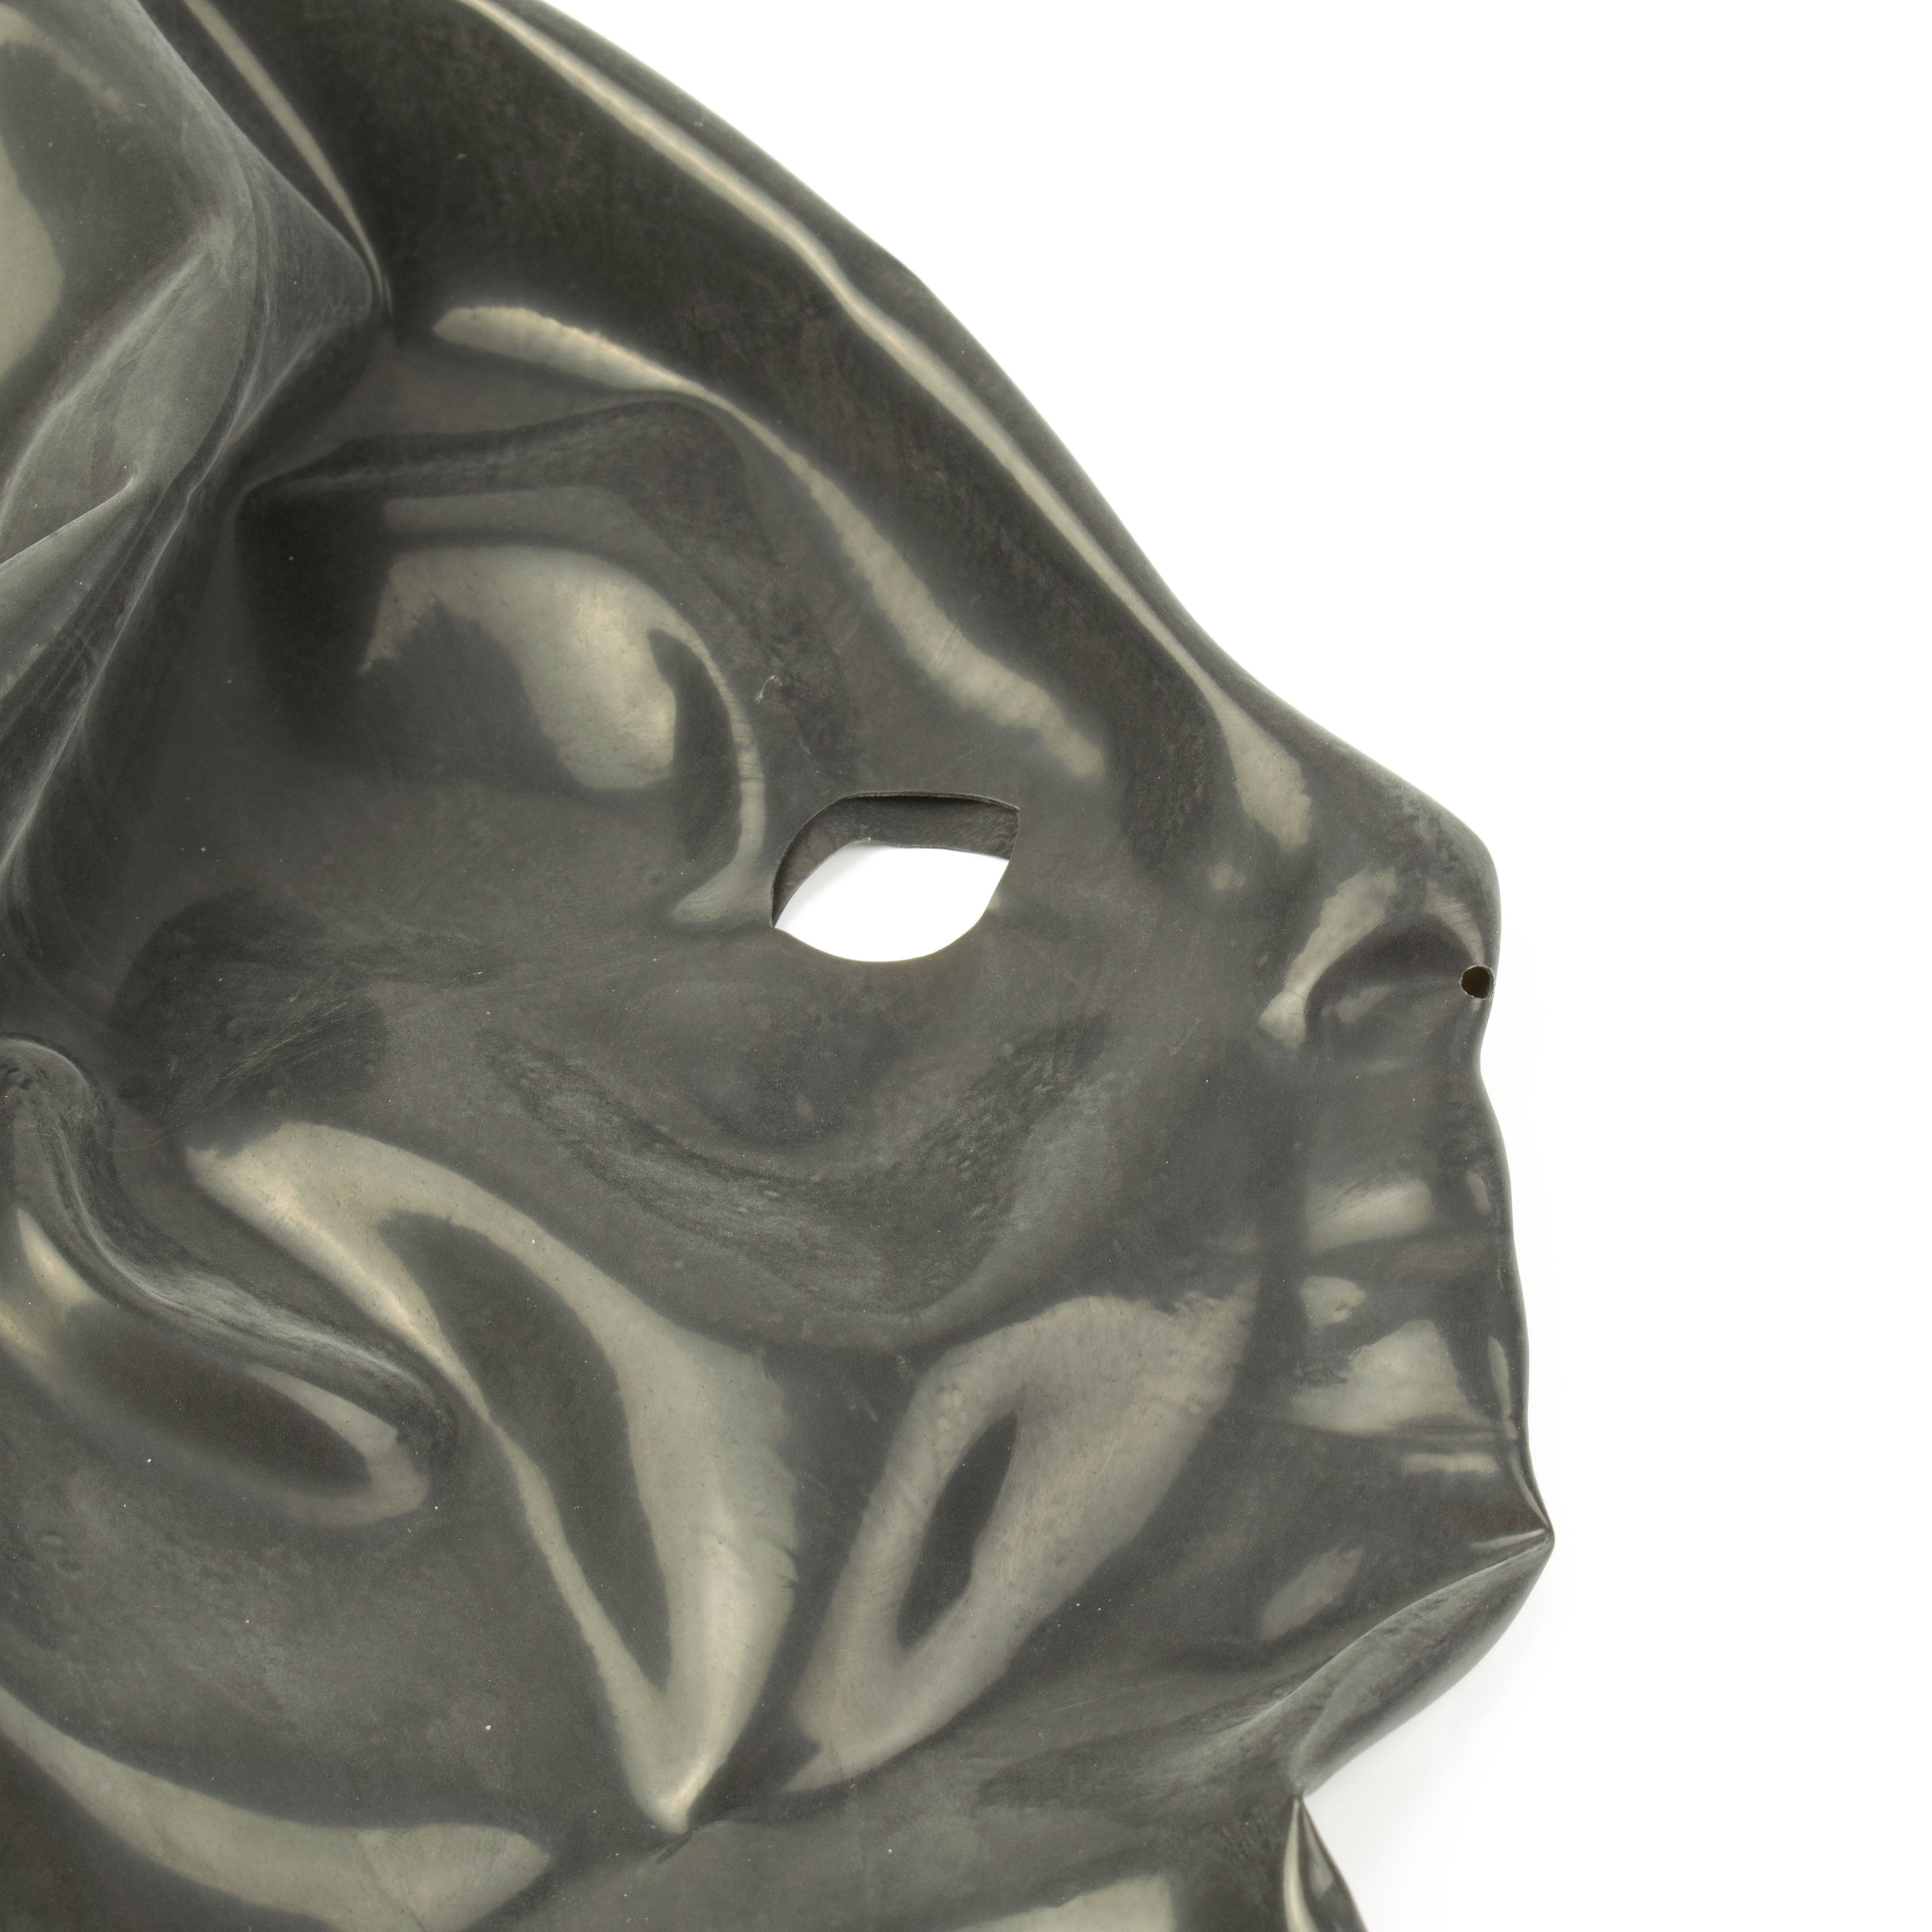 Rubberfashion Latex maske Frau anatomisch- heavy rubber - Latexmaske Haube mit Öffnungen für Augen und Nase für Frauen